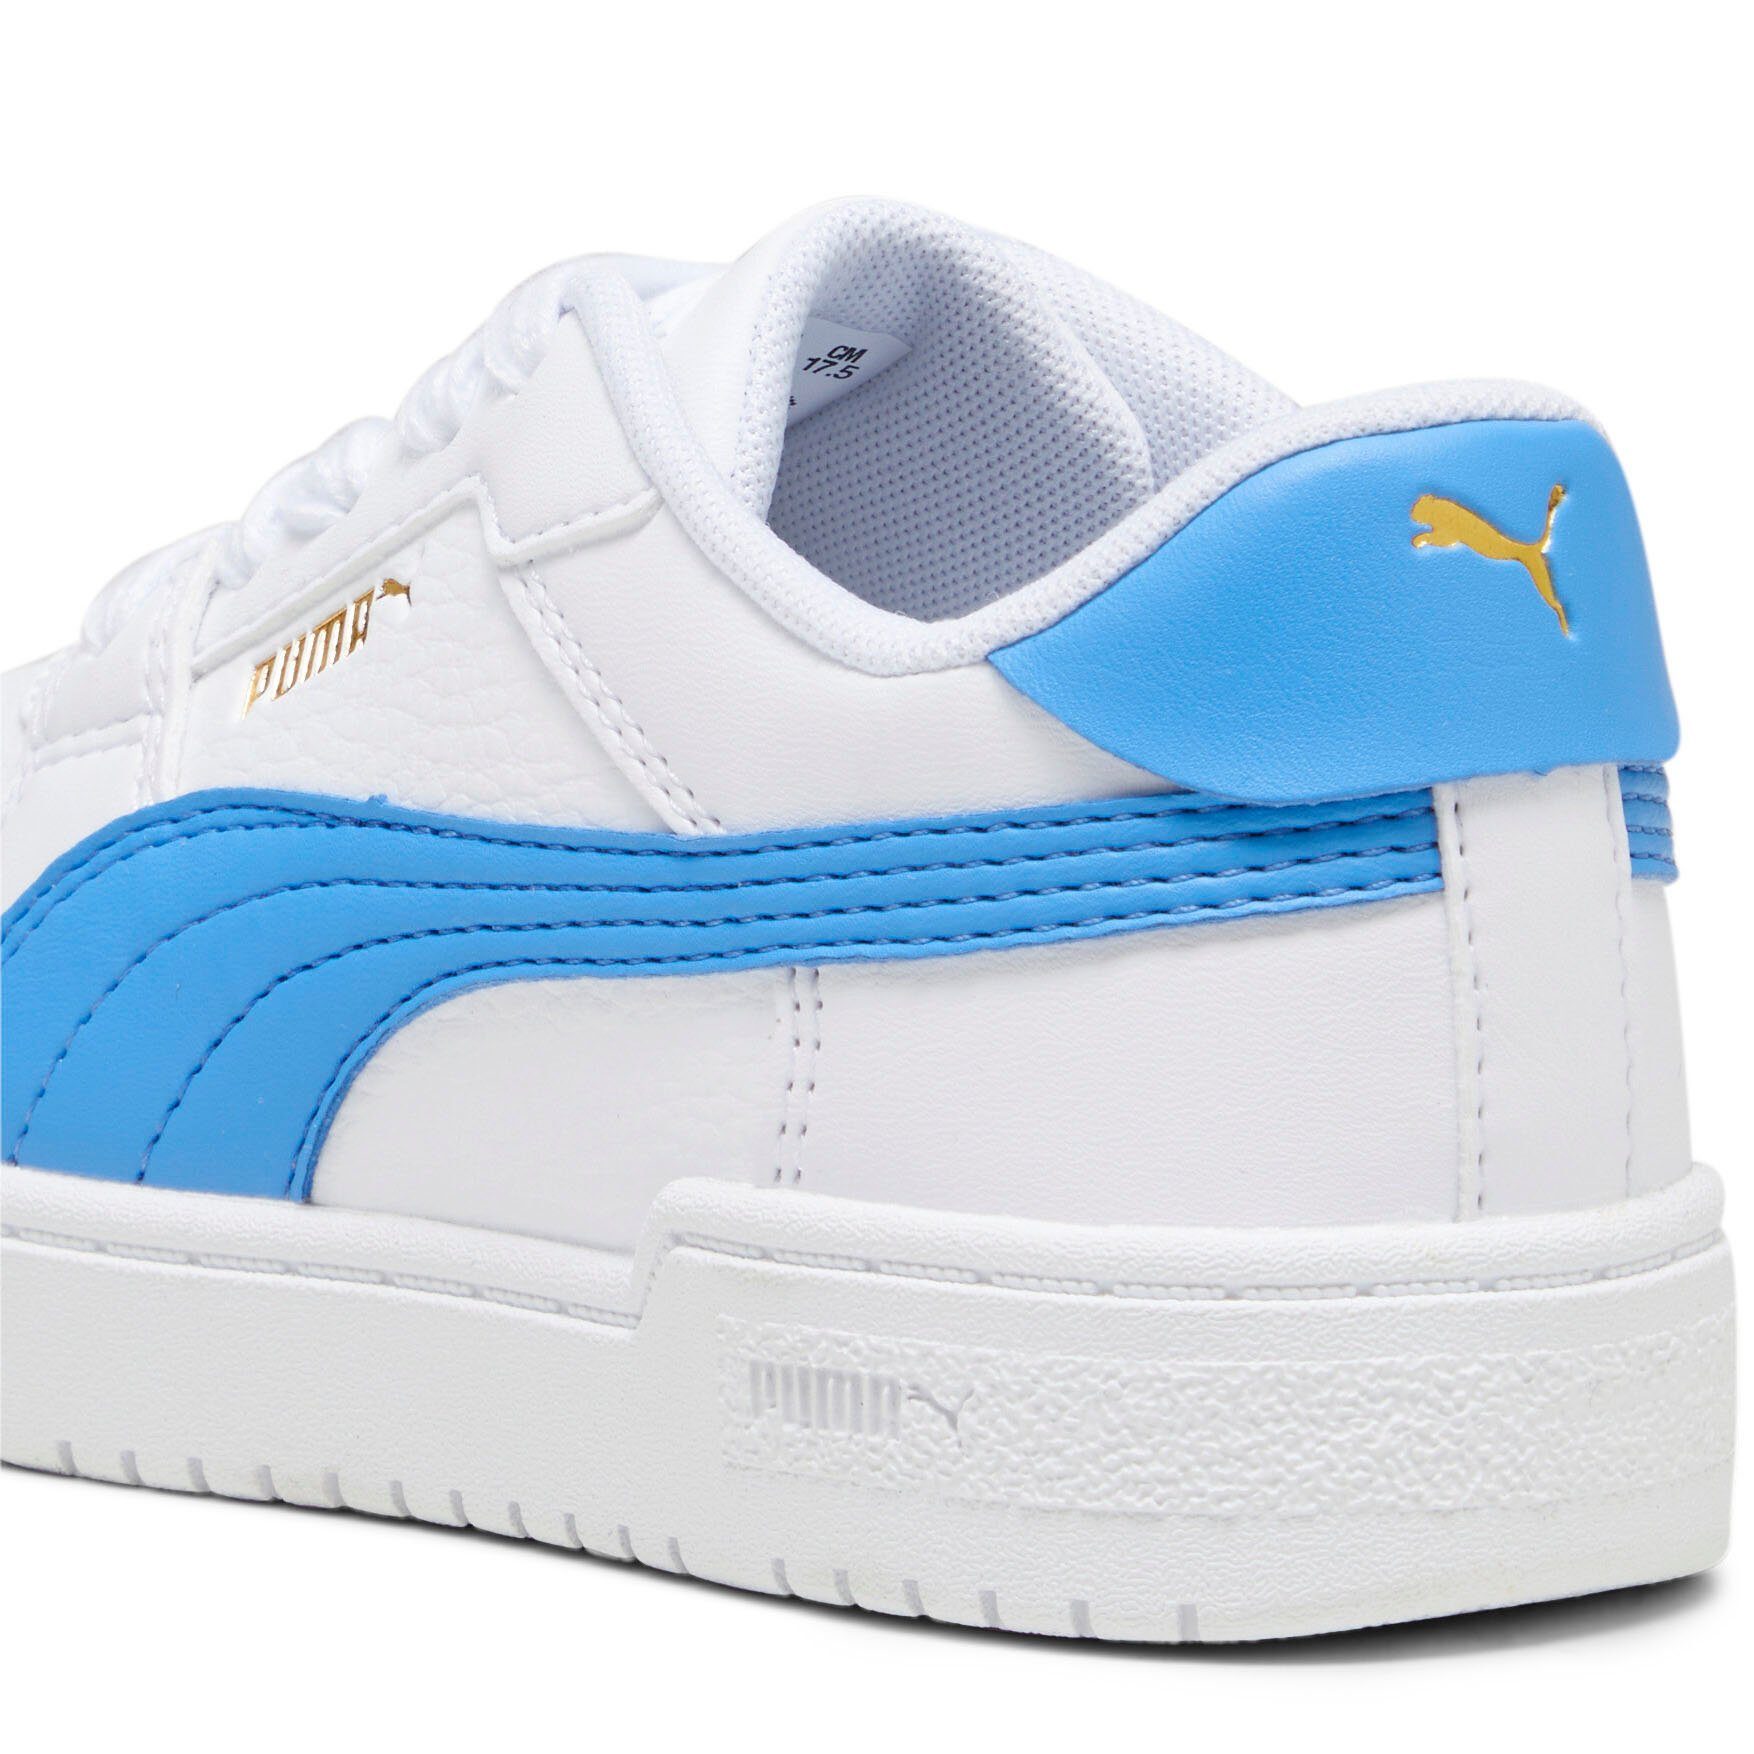 CLASSIC PUMA White-Regal PUMA Blue PS CA PRO Sneaker